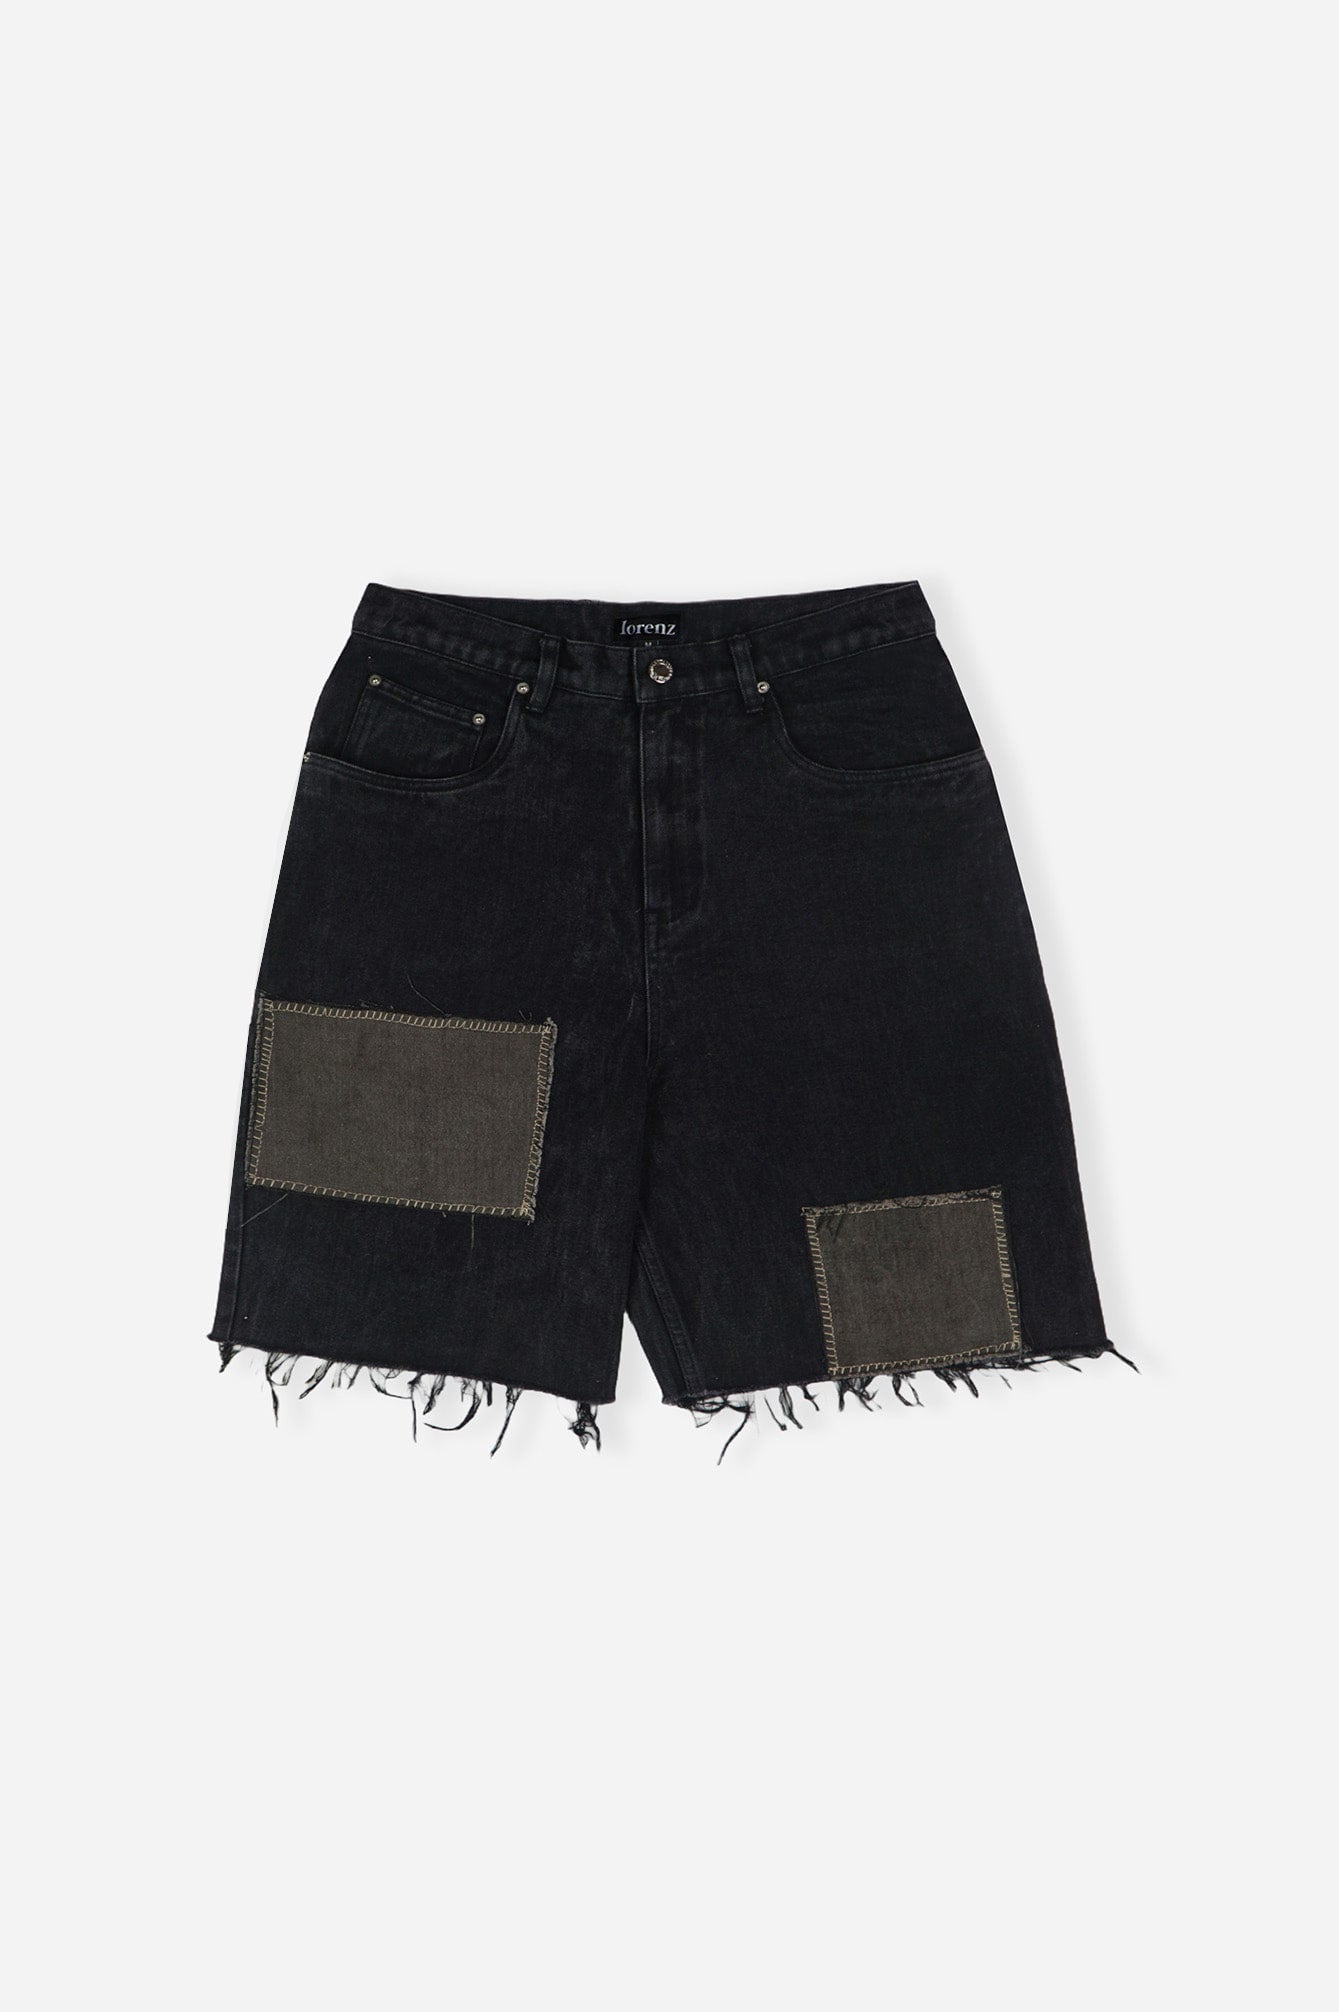 Black Patchwork Denim Shorts - Repurposed